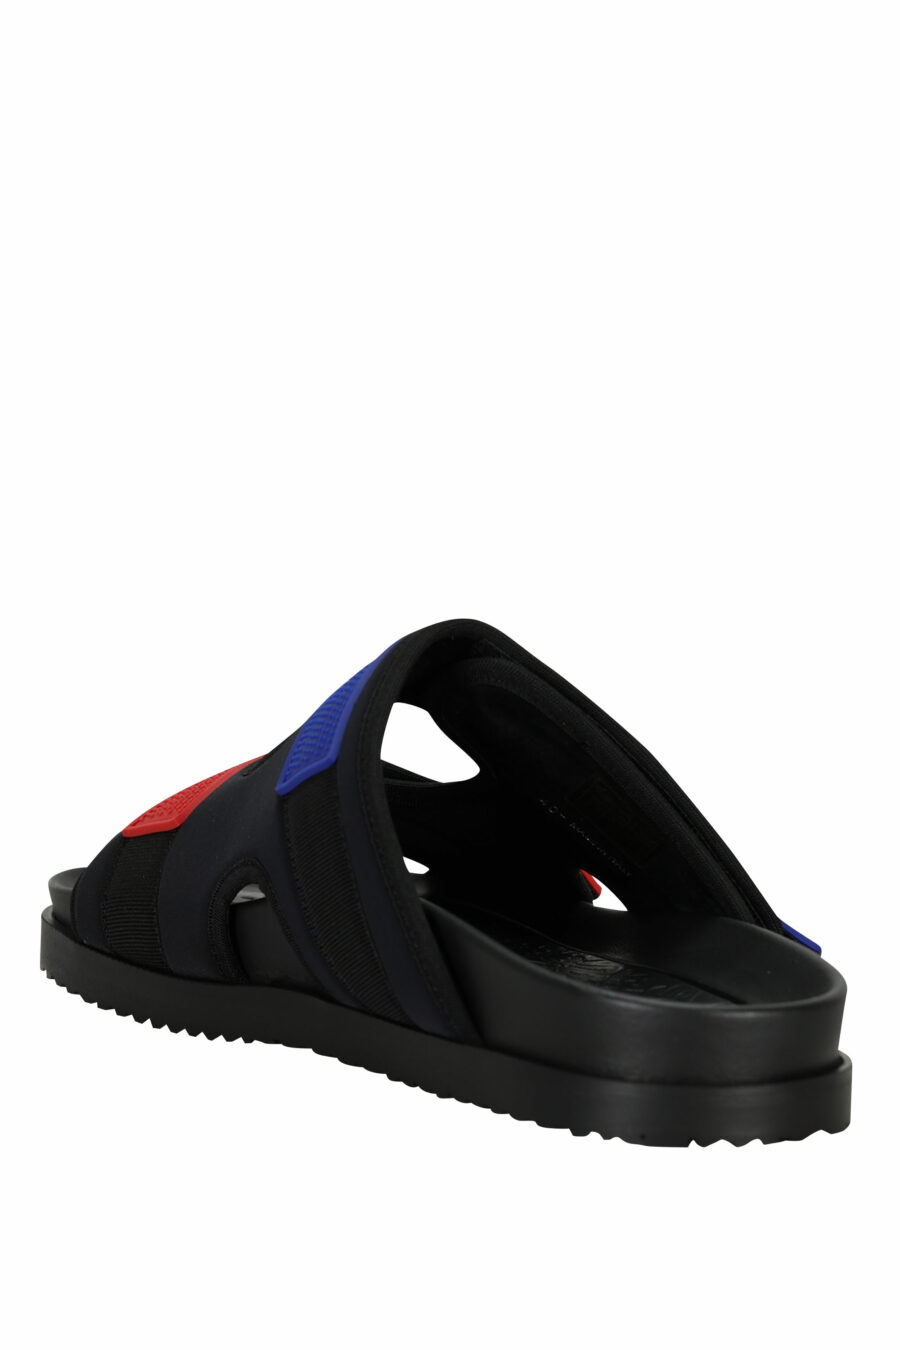 Sandalias negras con rojo y azul de velcro - 805777314715 3